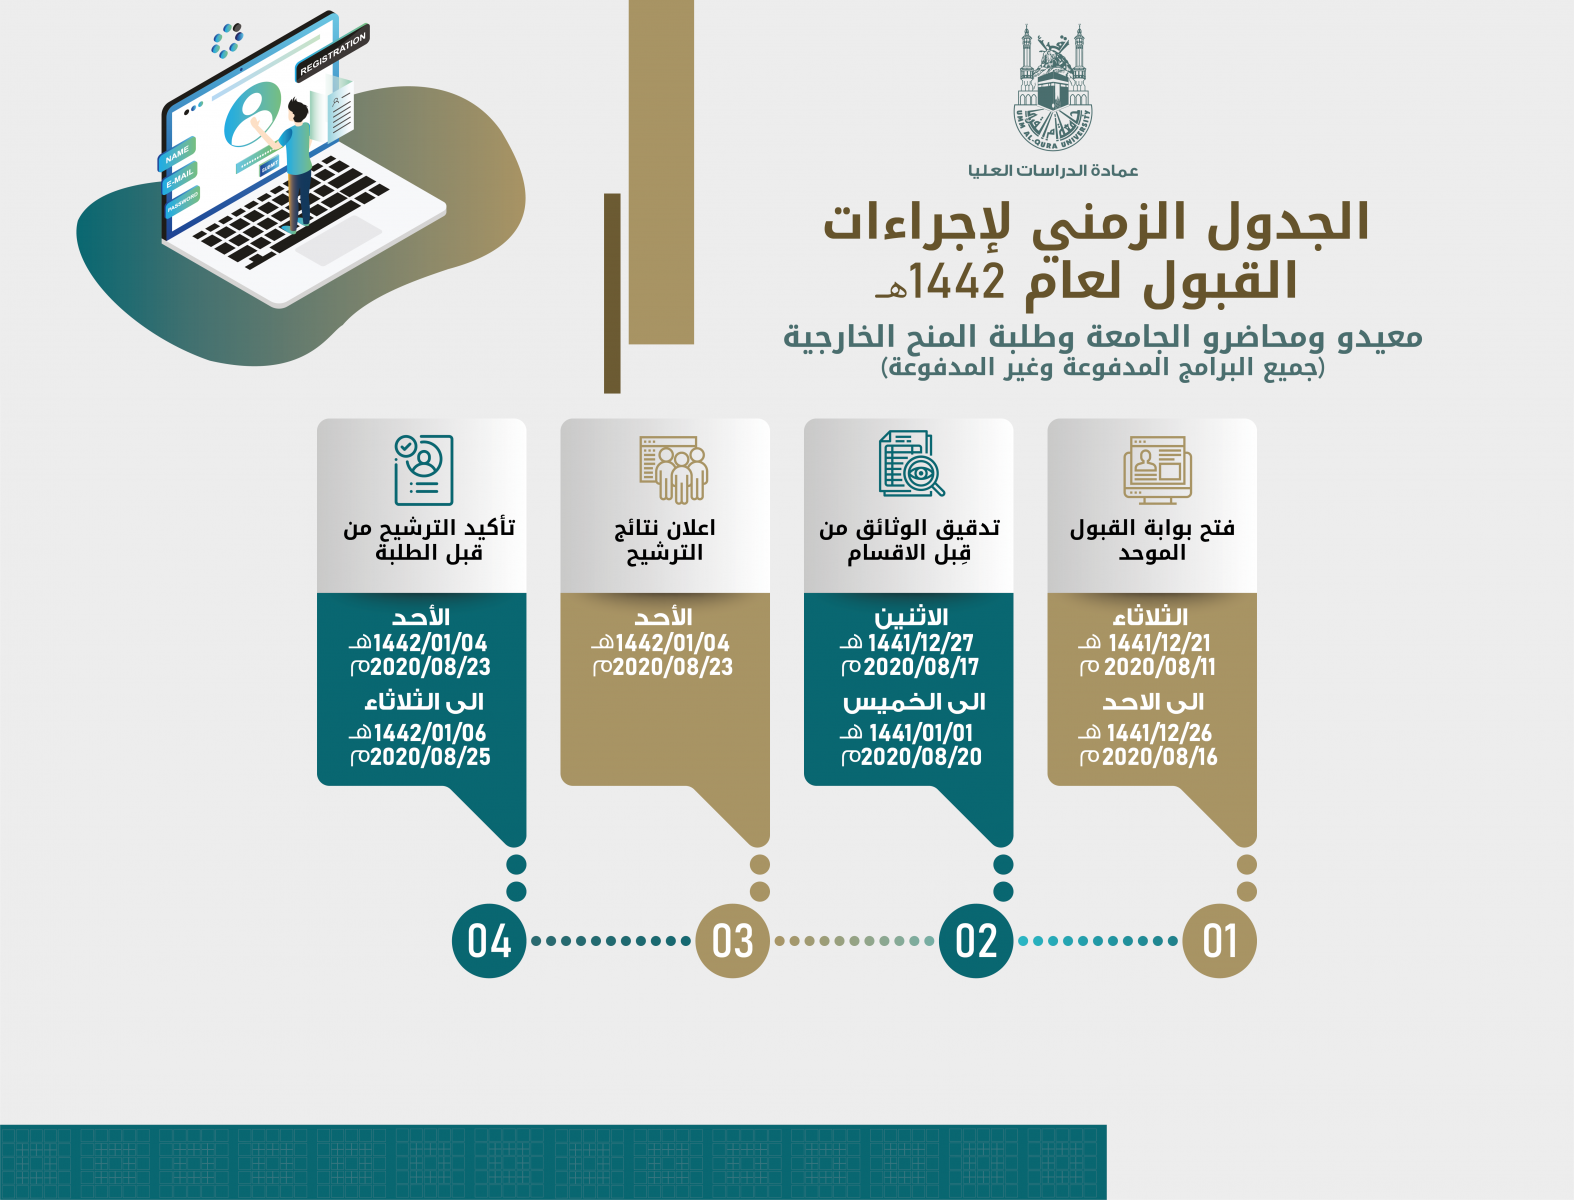 موقع سجل للجامعات السعودية